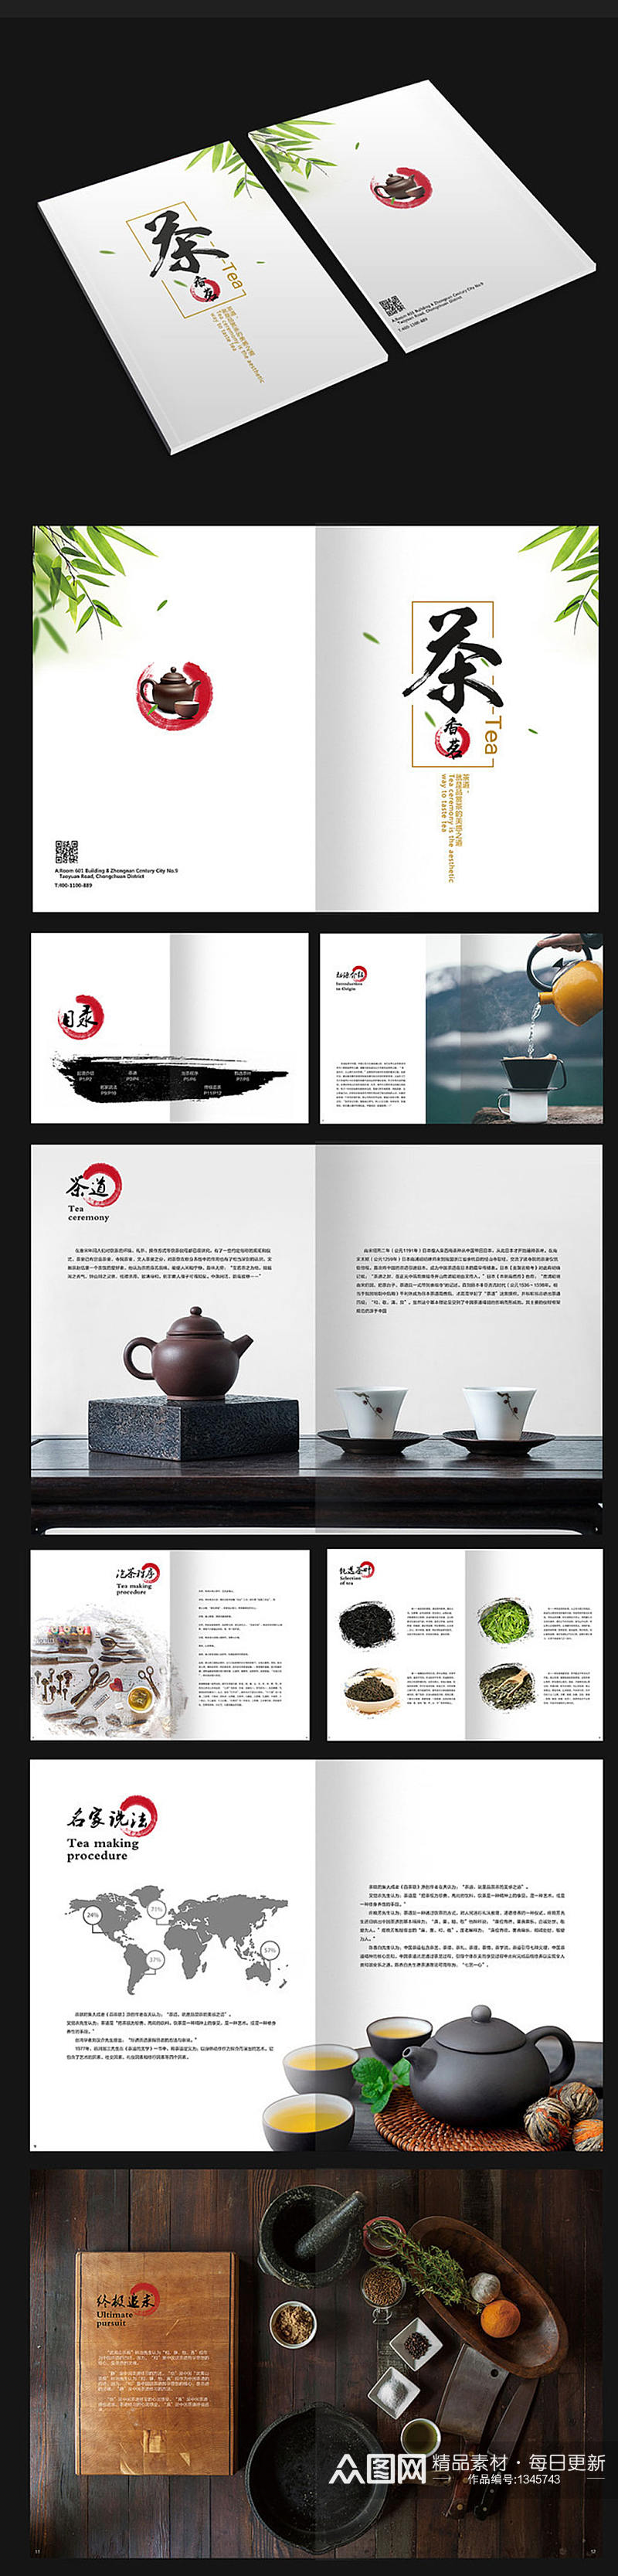 中国风茶道画册设计素材